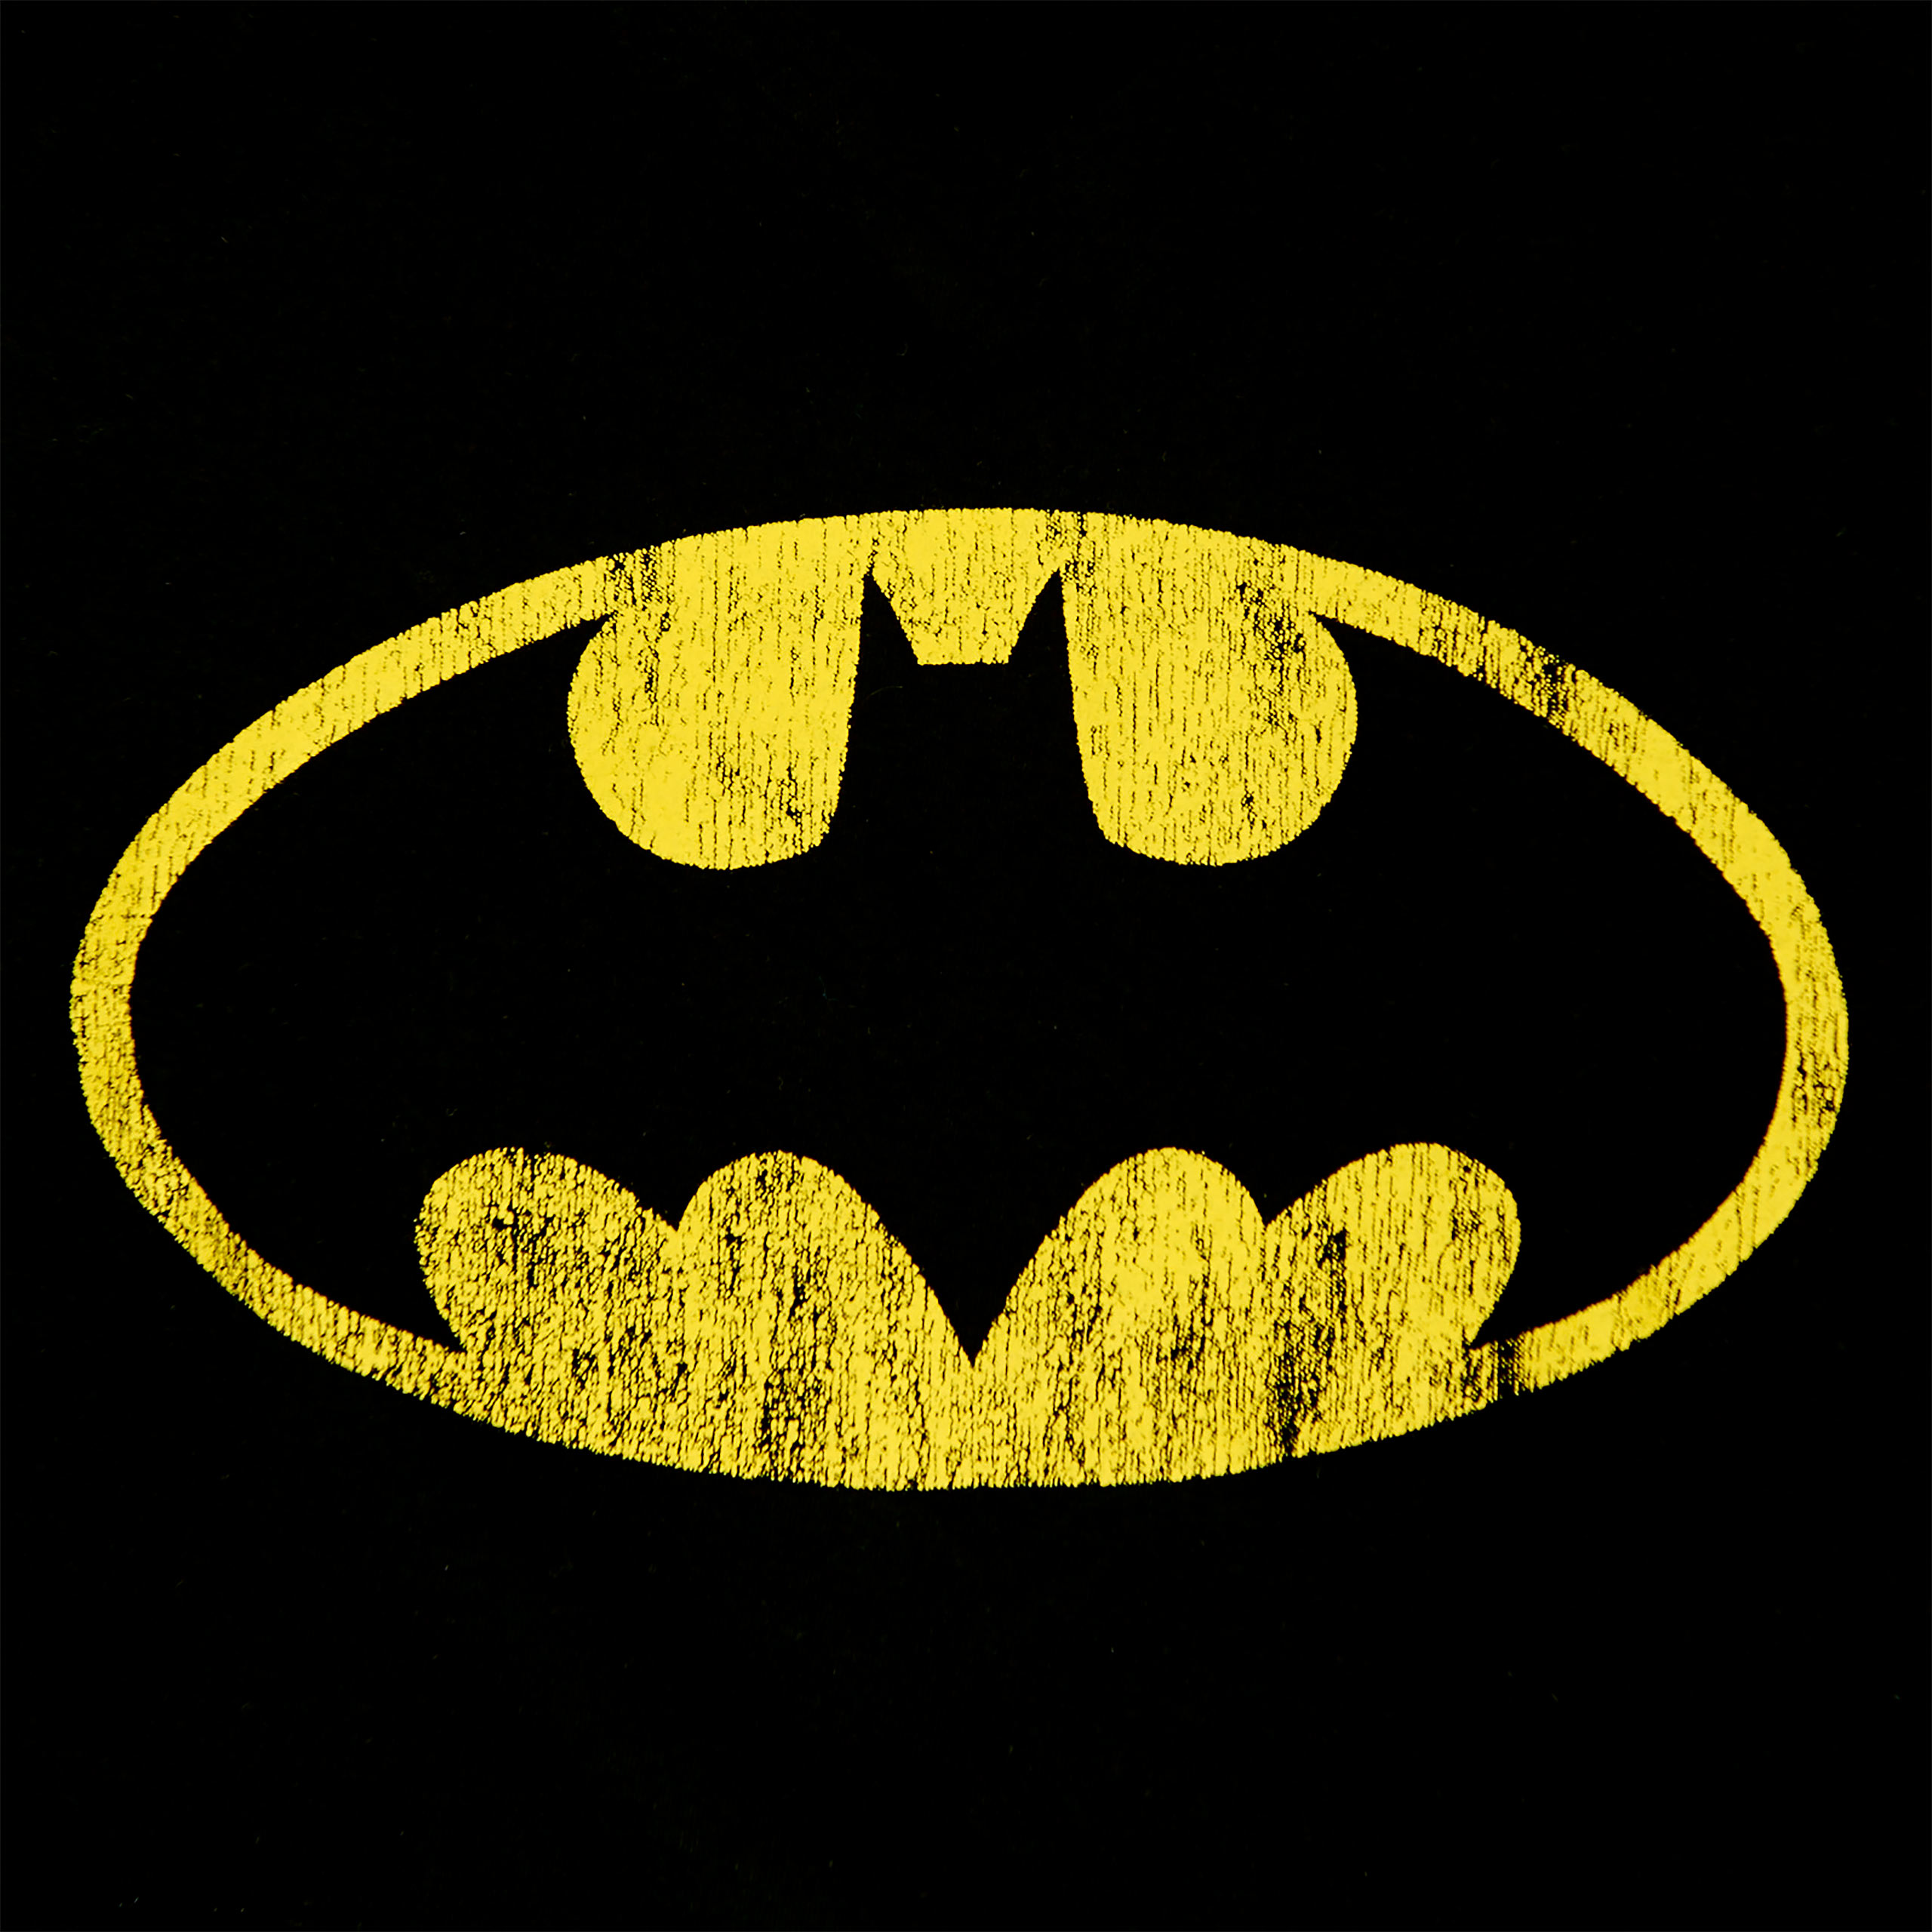 Batman - Distressed Shield T-Shirt